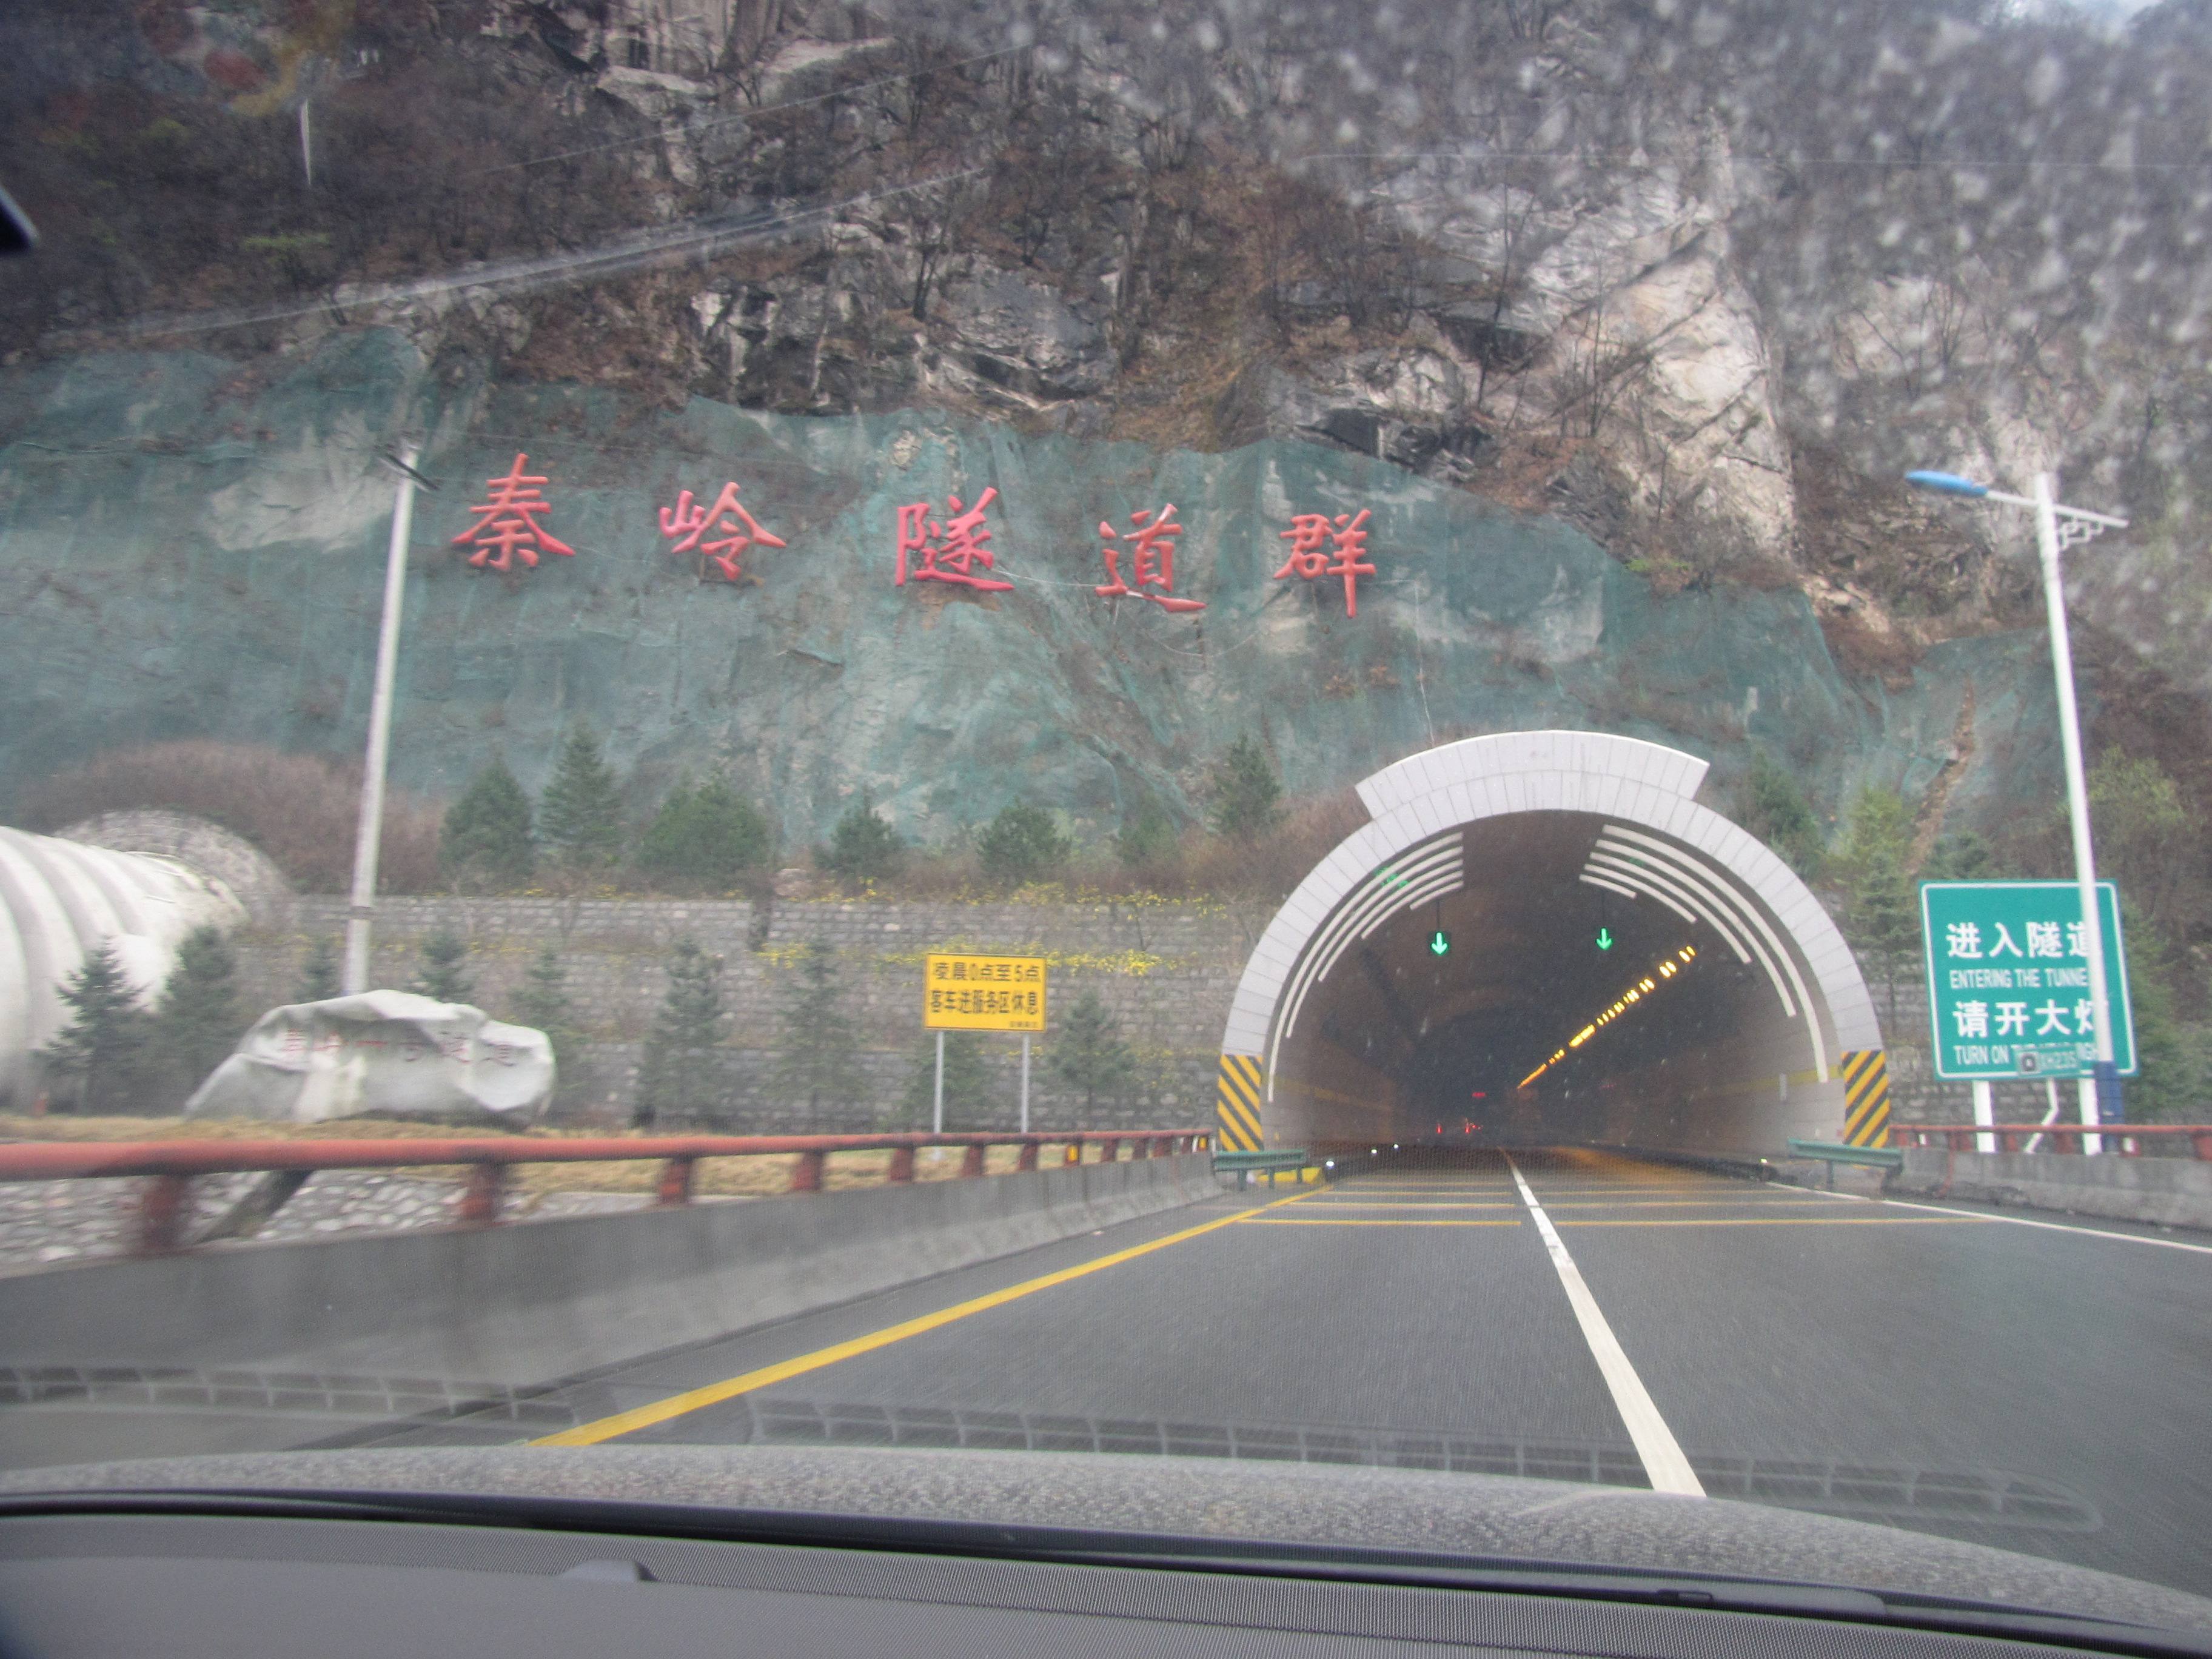 中条山隧道全国第一图片